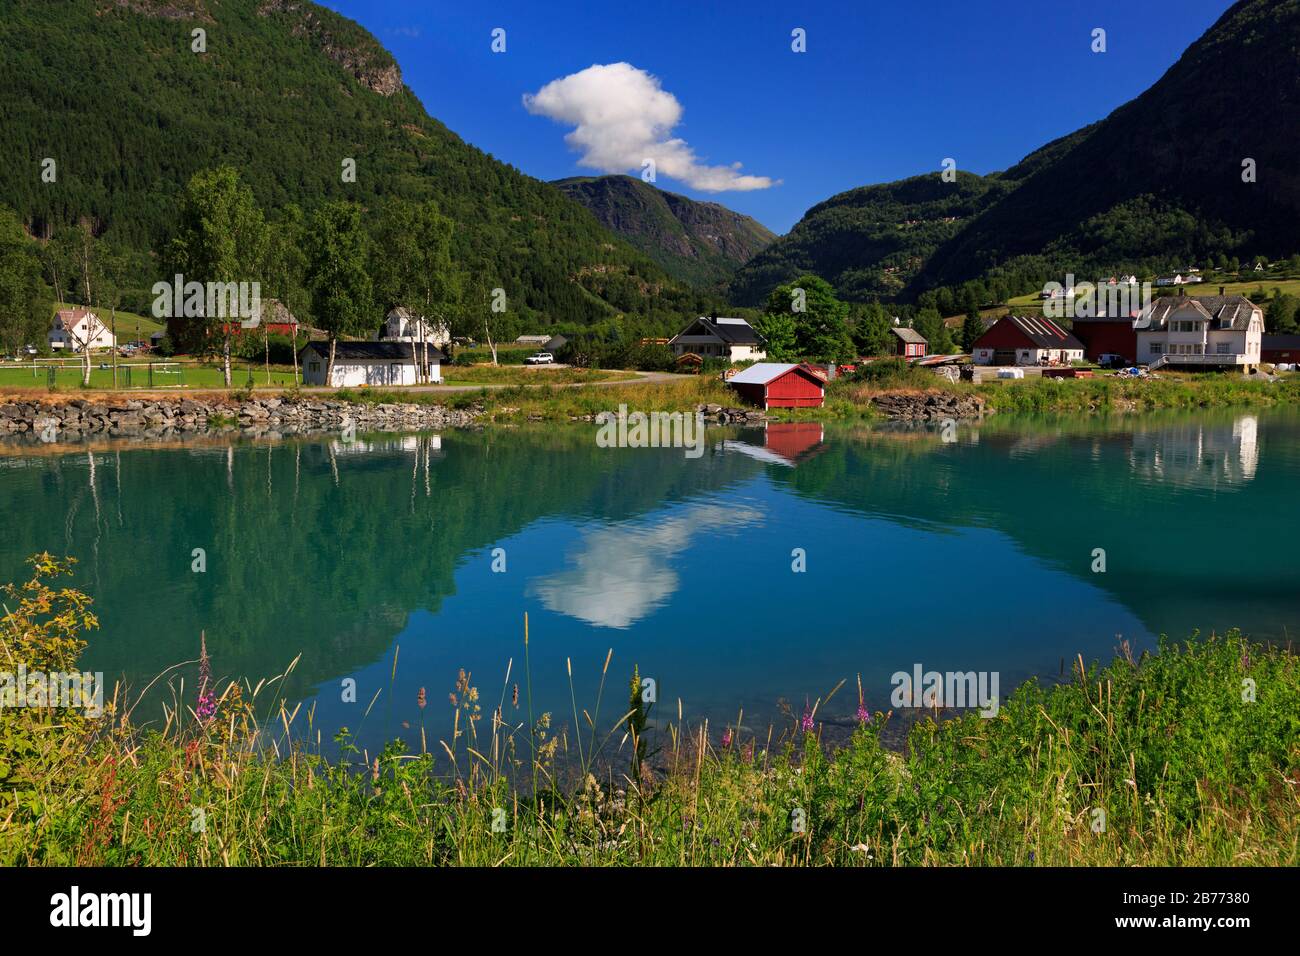 Farm along Floane River, Skjolden Village, Sognefjord, Sogn og Fjordane County, Norway Stock Photo